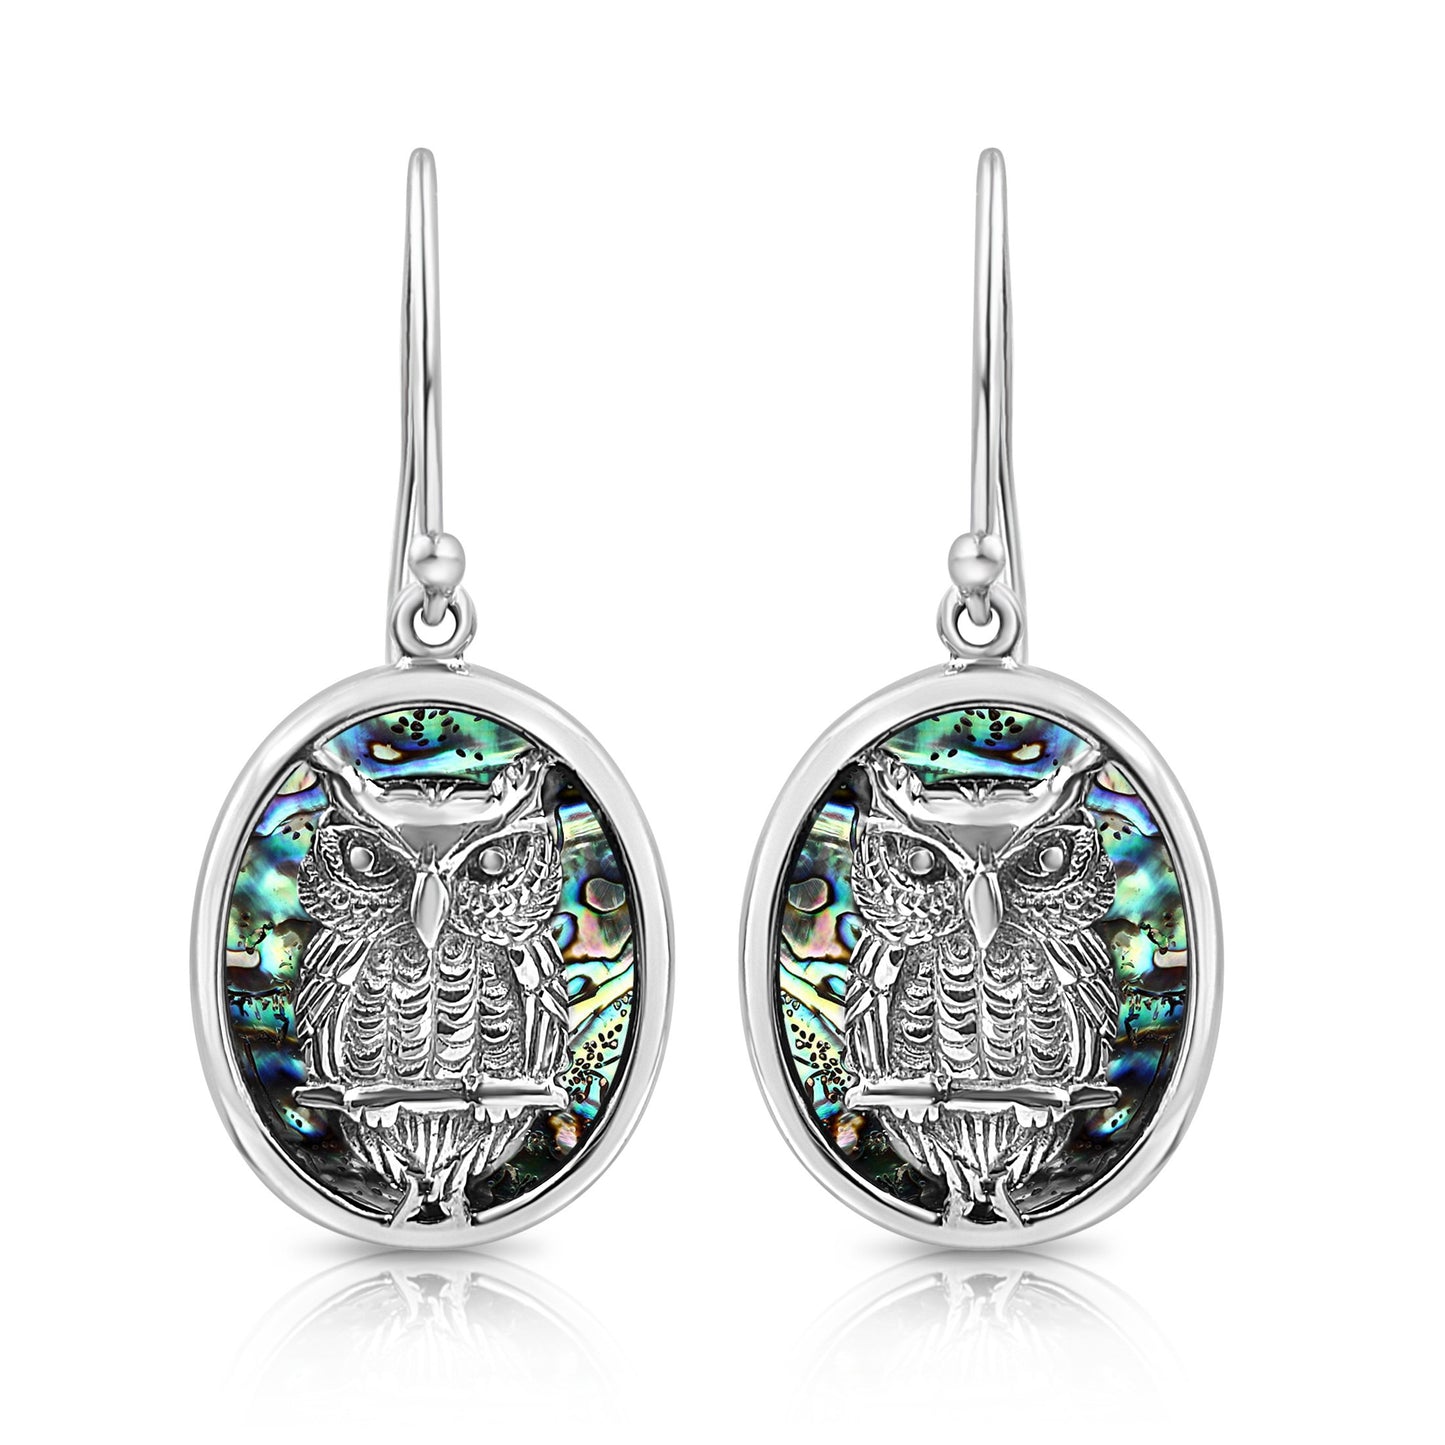 BESHEEK Sterling Silver and Paua Shell Wise Owl Oval Drop Earrings | Handmade Hypoallergenic Boho Beach Gala Wedding Style Sterling Earrings